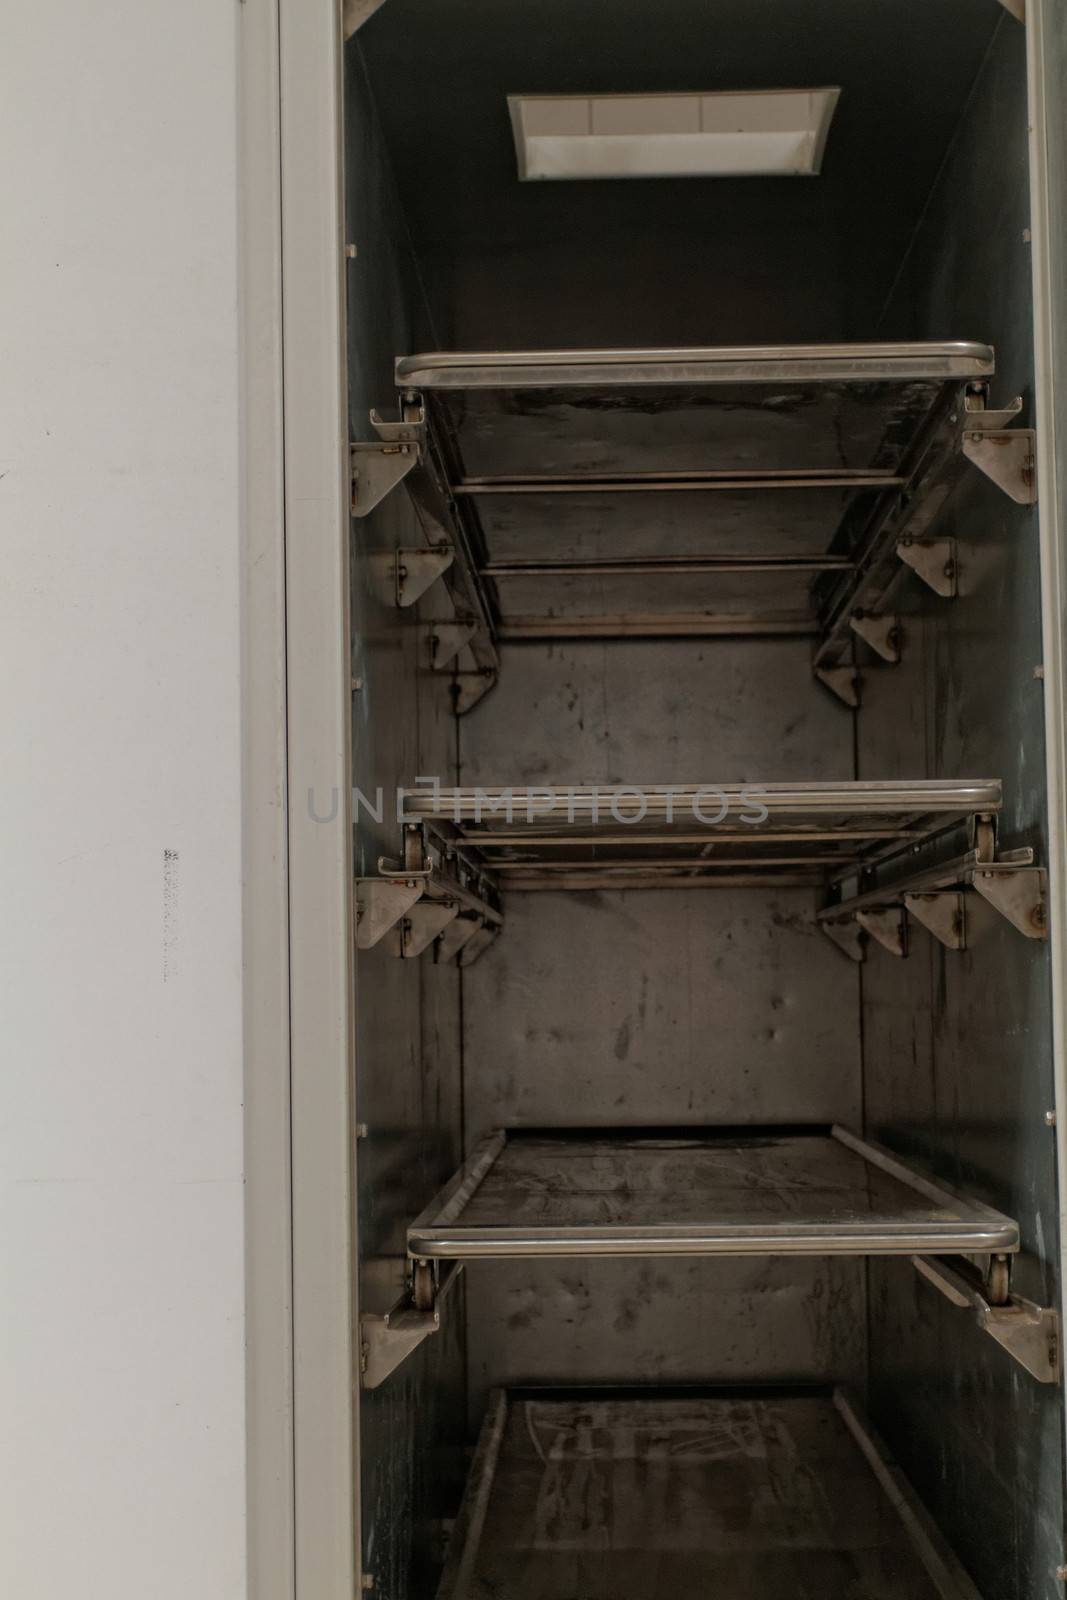 Refrigerator in morgue